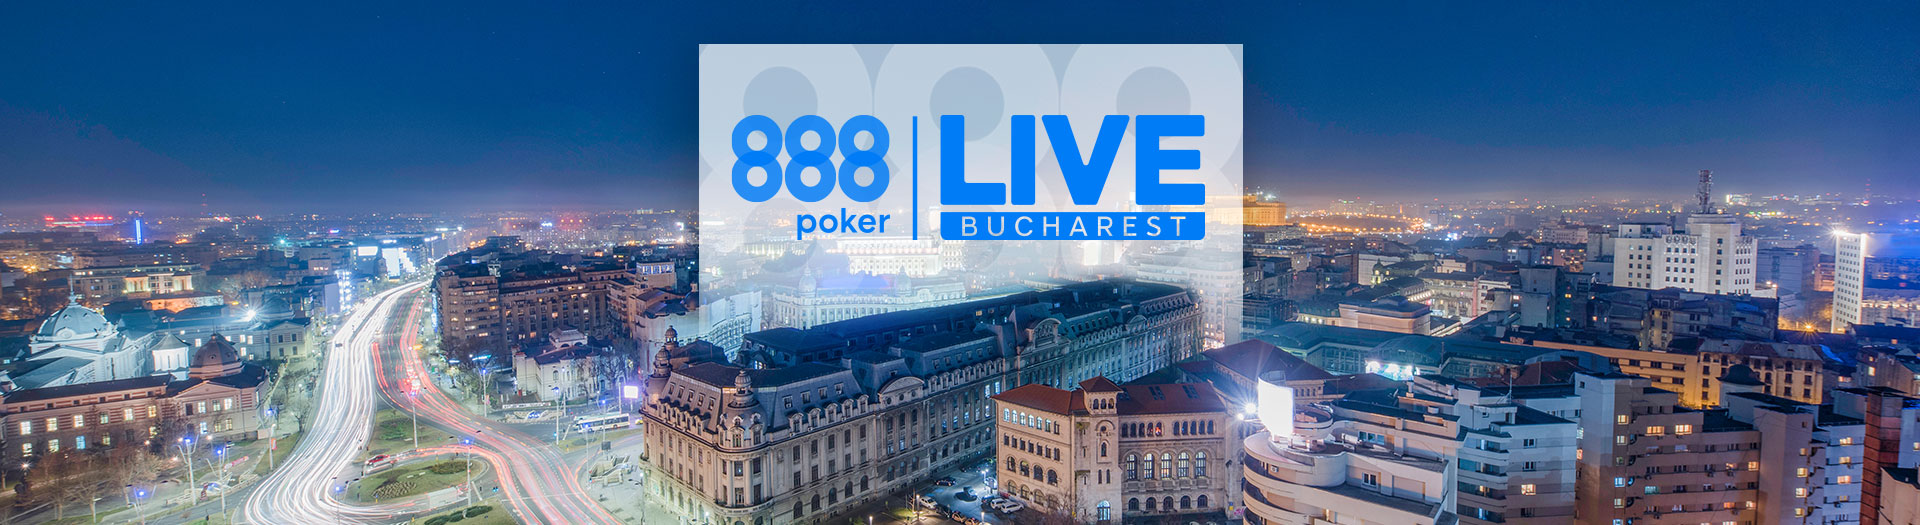 Live-Bucharest-LP-image-1686561106289_tcm1488-590031